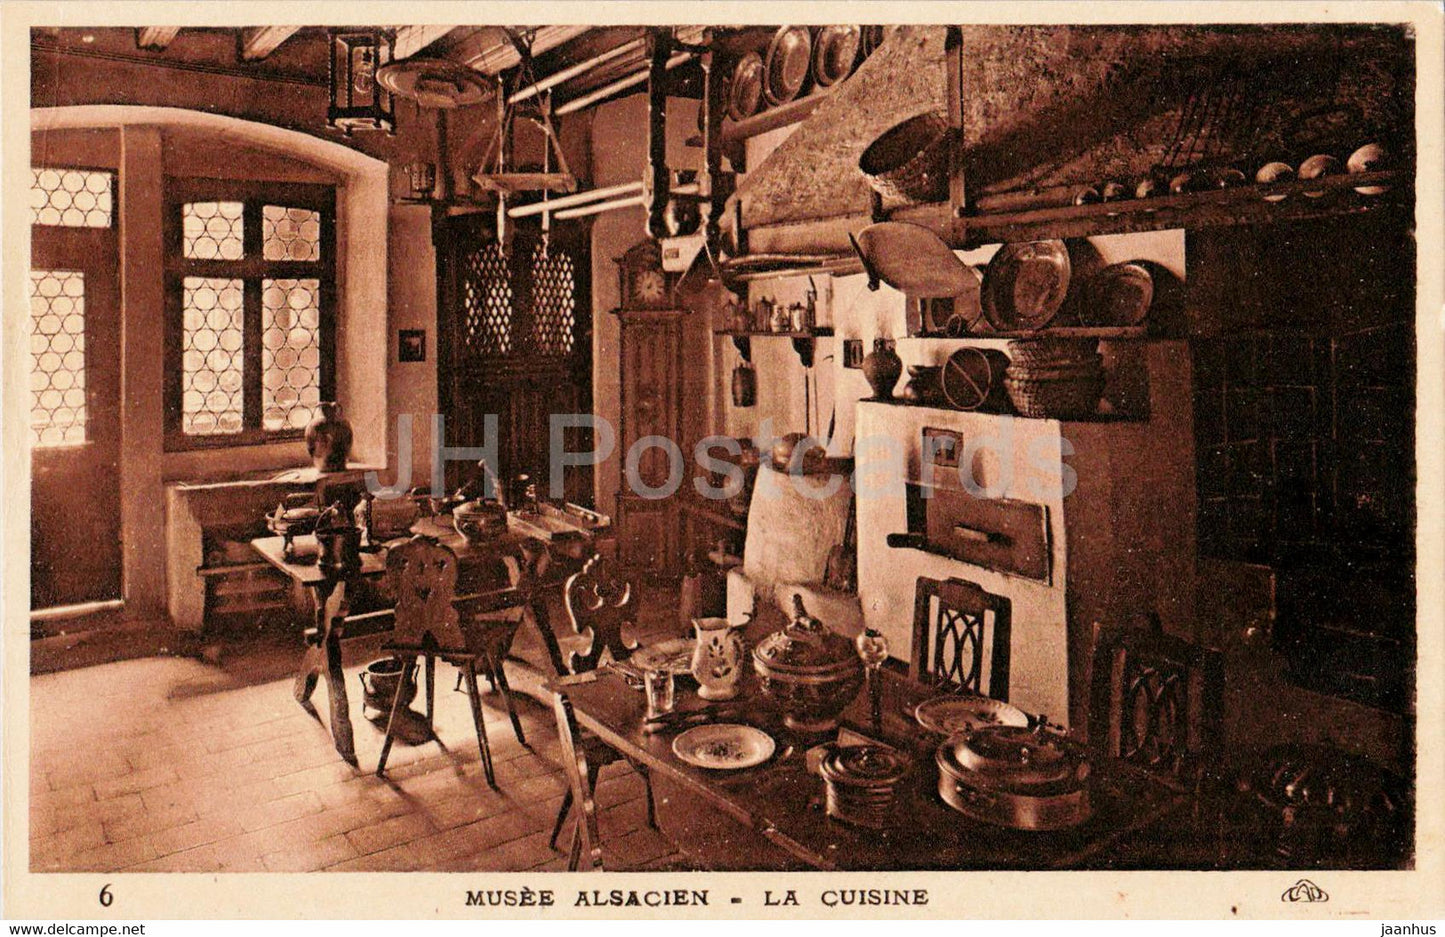 Strasbourg - Strassburg - Musee Alsacien - La Cuisine - kitchen - museum - 6 - old postcard - France - unused - JH Postcards